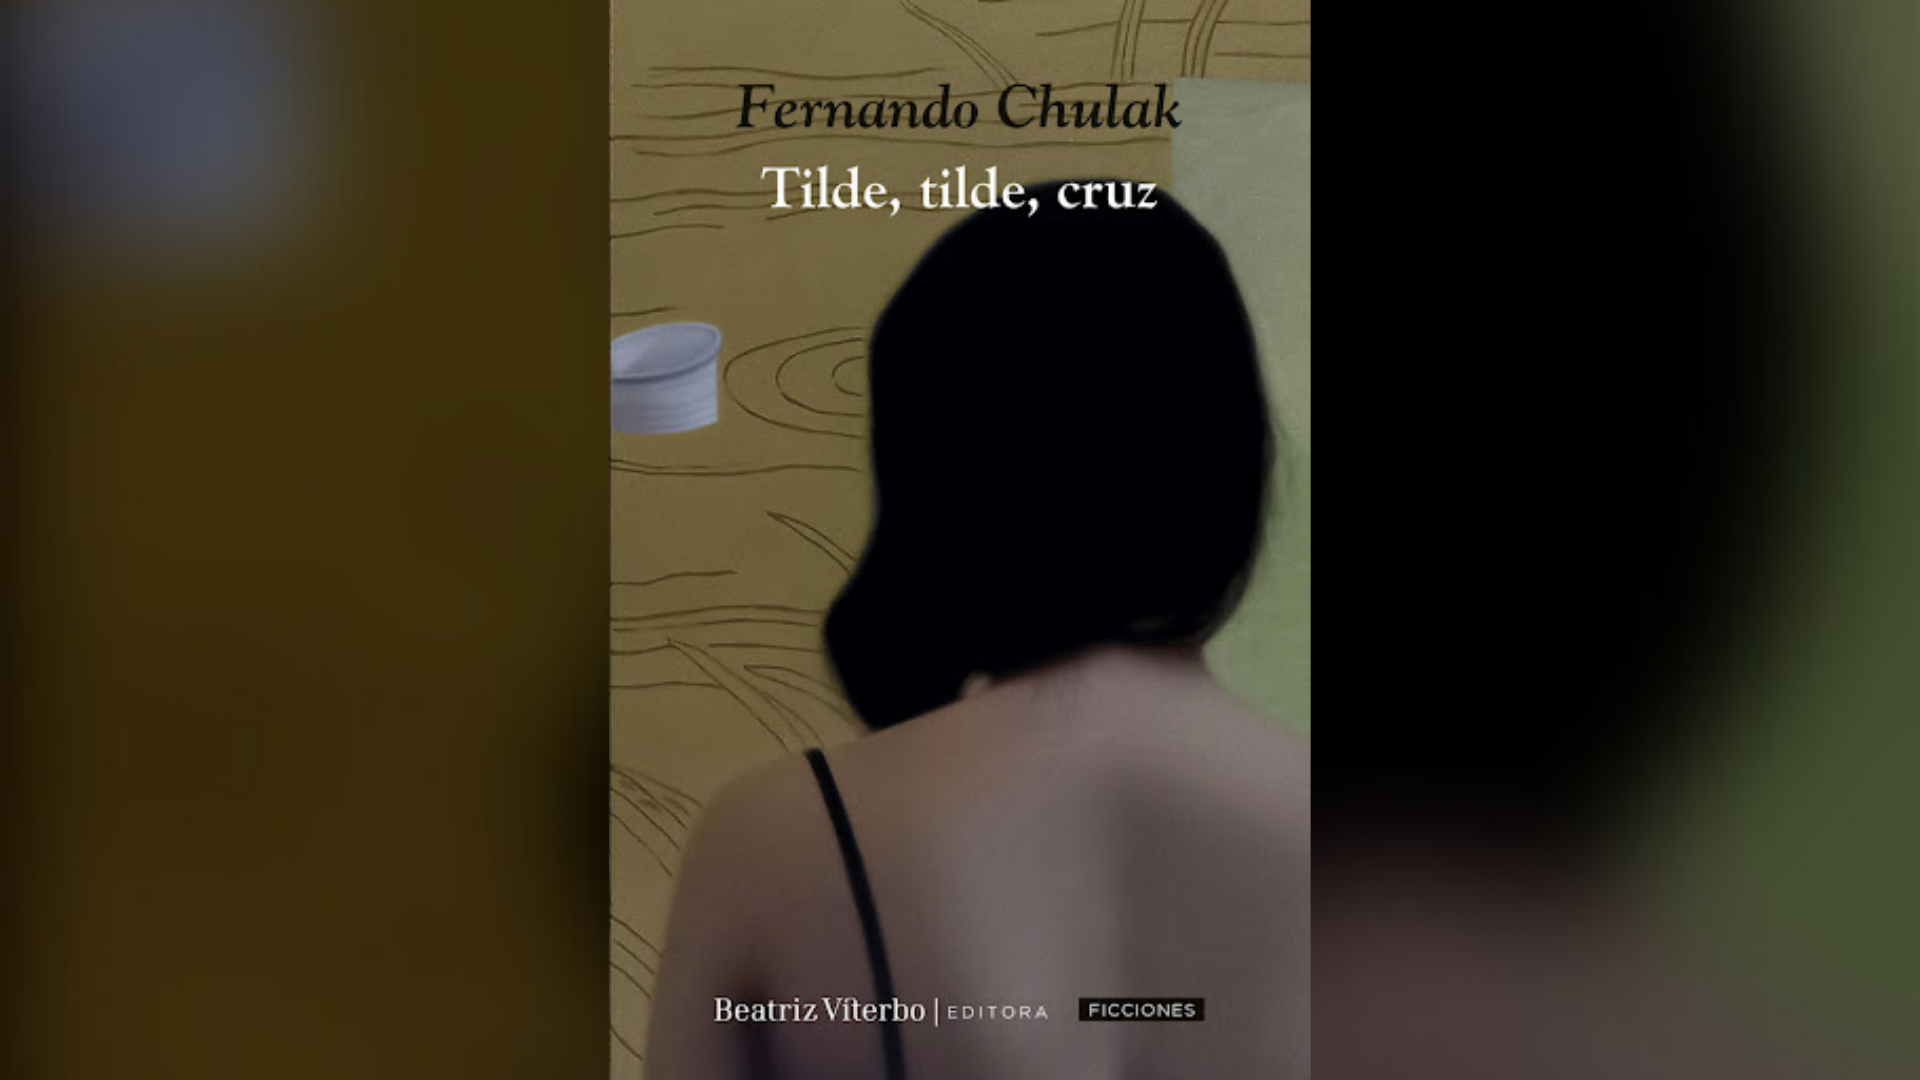 Tilde, tilde, cruz (Beatriz Viterbo, 2021) de Fernando Chulak